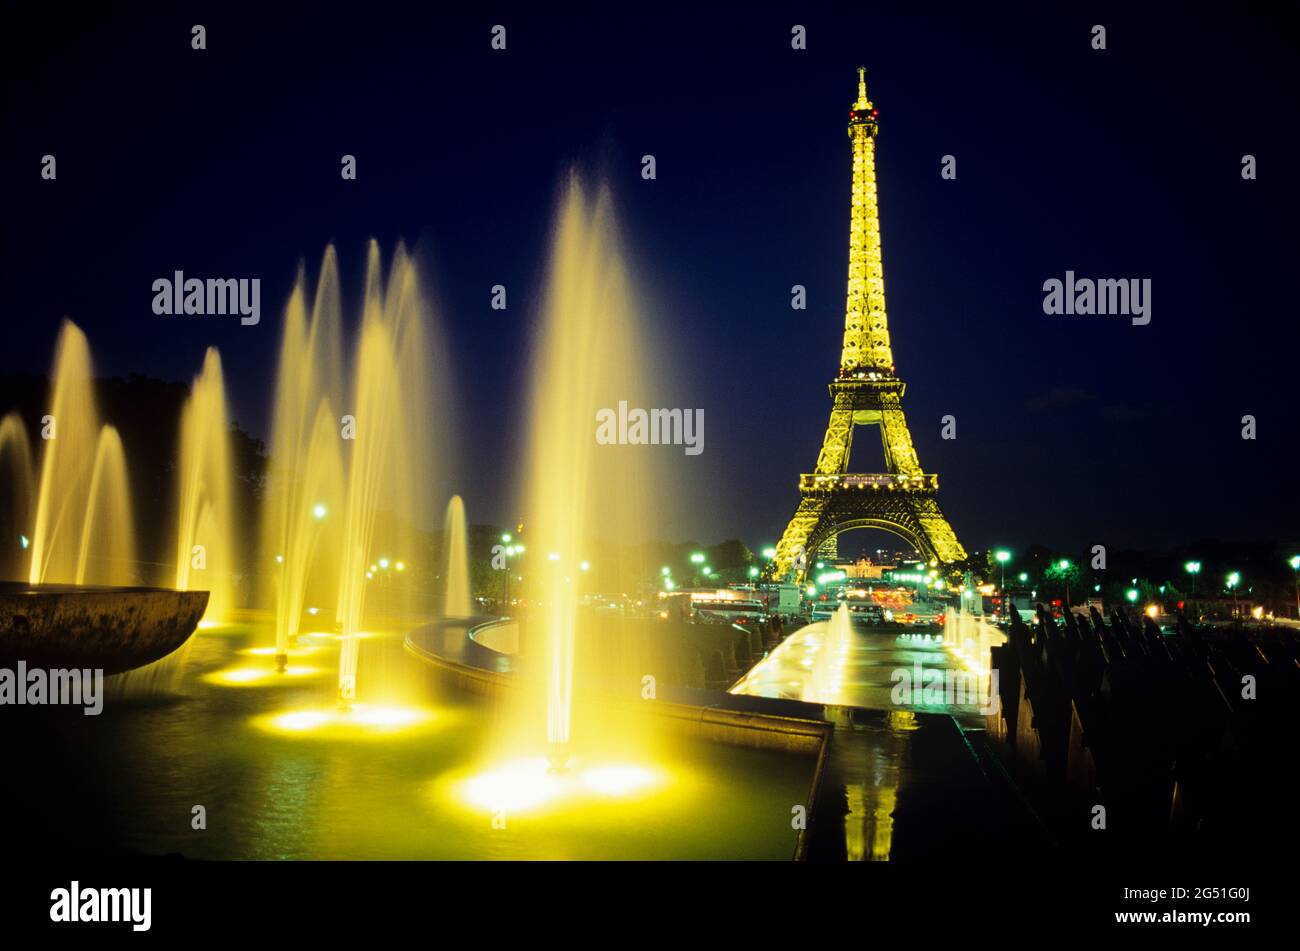 Vue sur les fontaines illuminées et la tour Eiffel derrière, Paris, France Banque D'Images